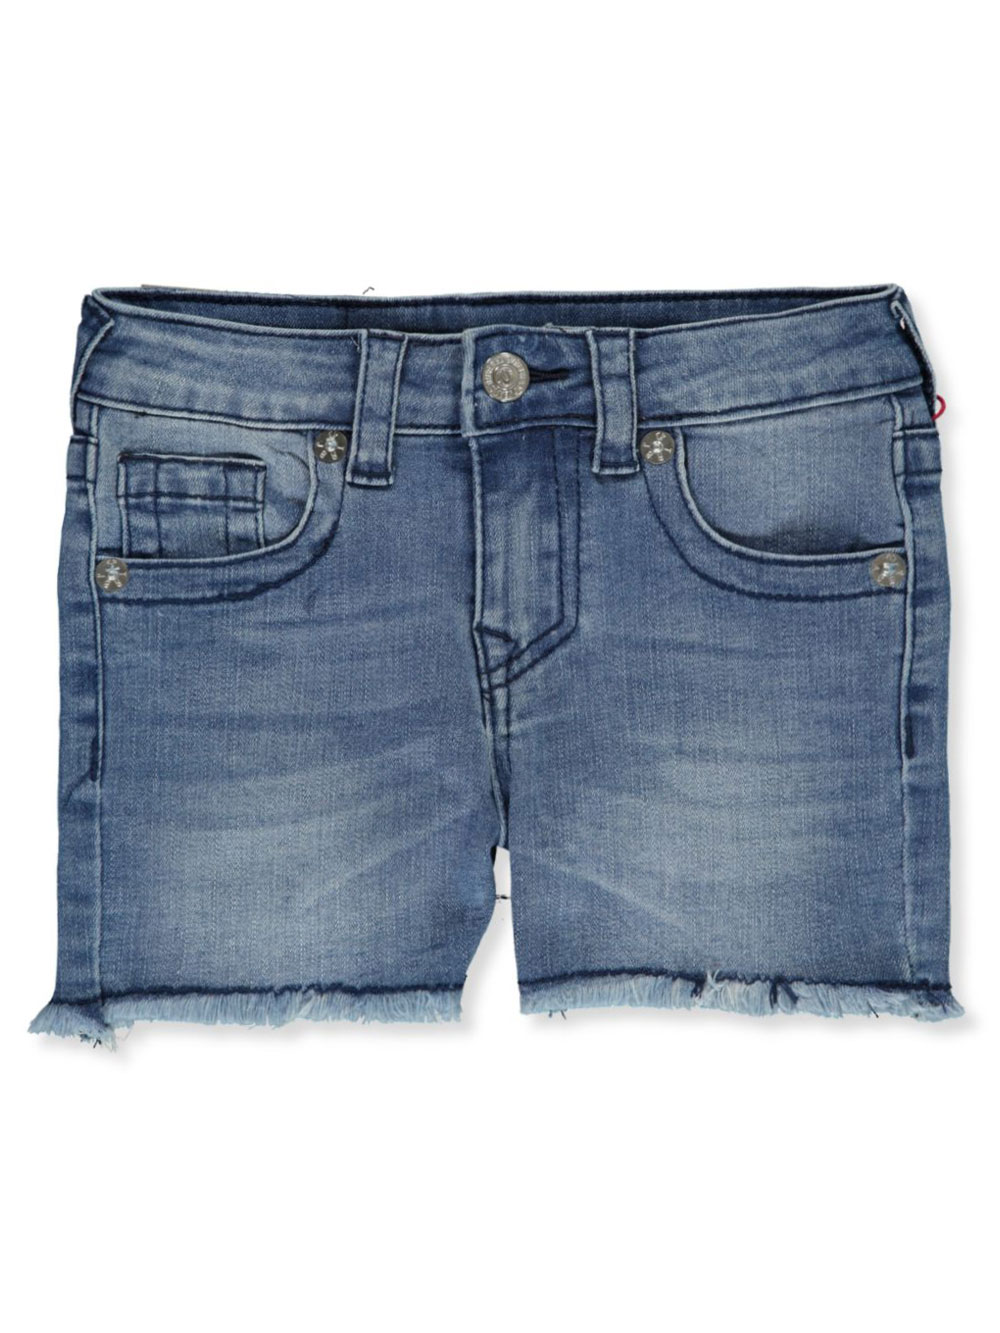 True Religion Girls' Denim Short Shorts | eBay